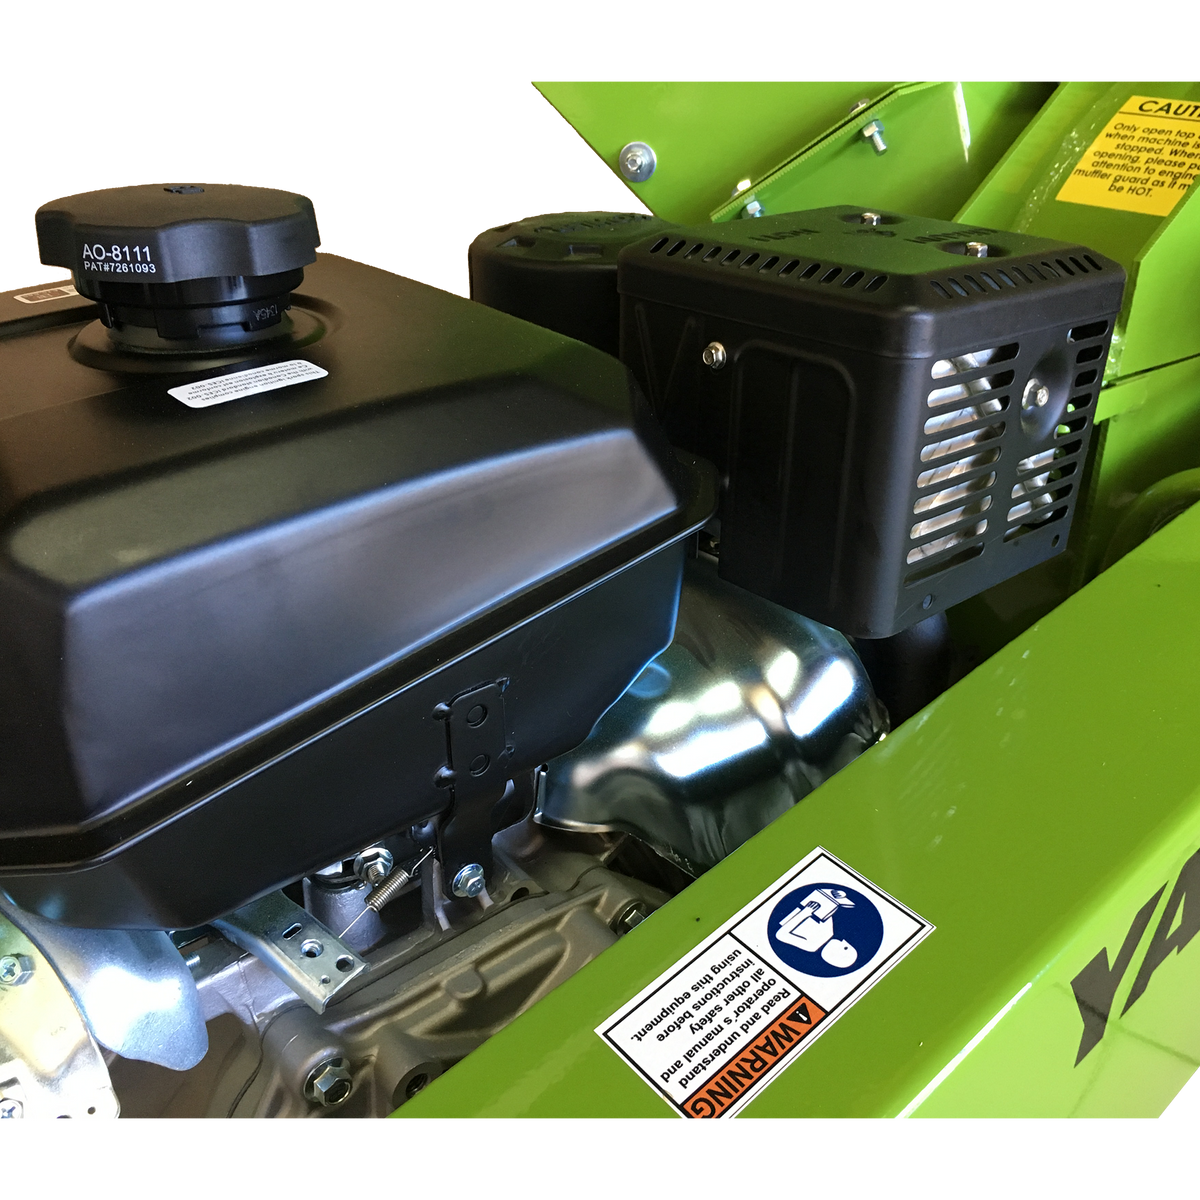 YARDBEAST 3514 ATV 429cc 14HP Kohler CH440 Engine 3.5" Heavy Duty Wood Chipper Shredder Tow Trailer New